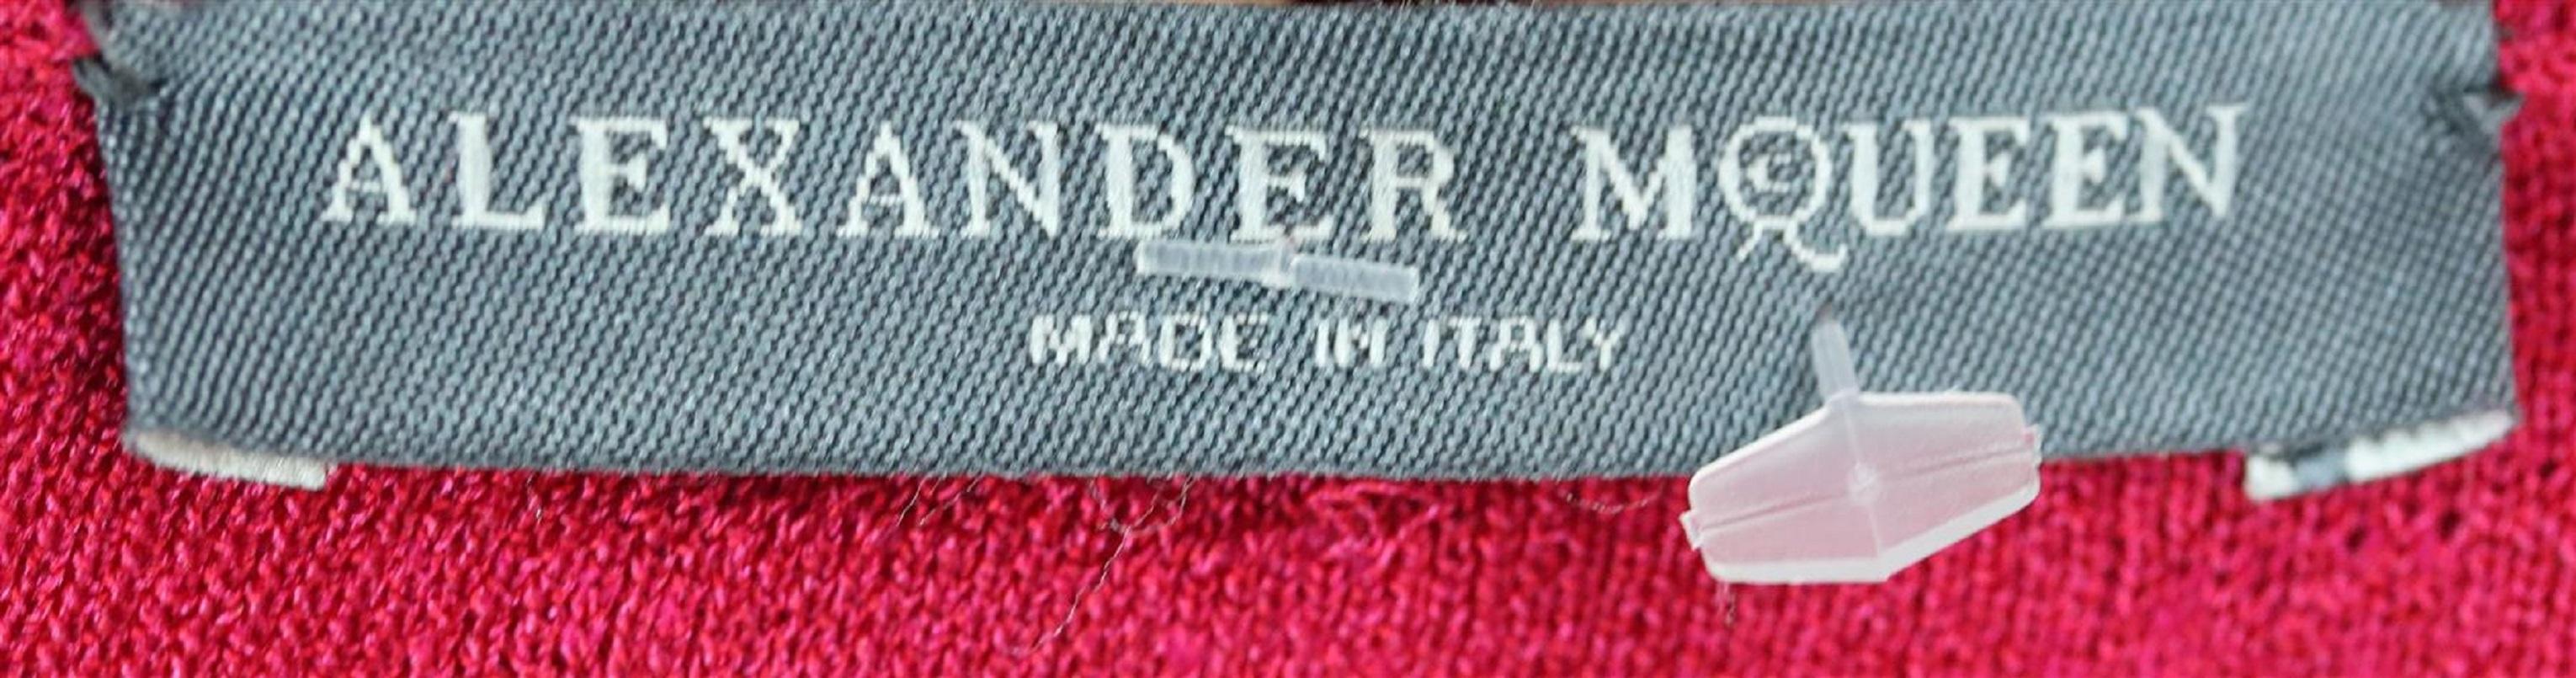 Red Alexander McQueen Matelassé Stretch Knit Dress Large